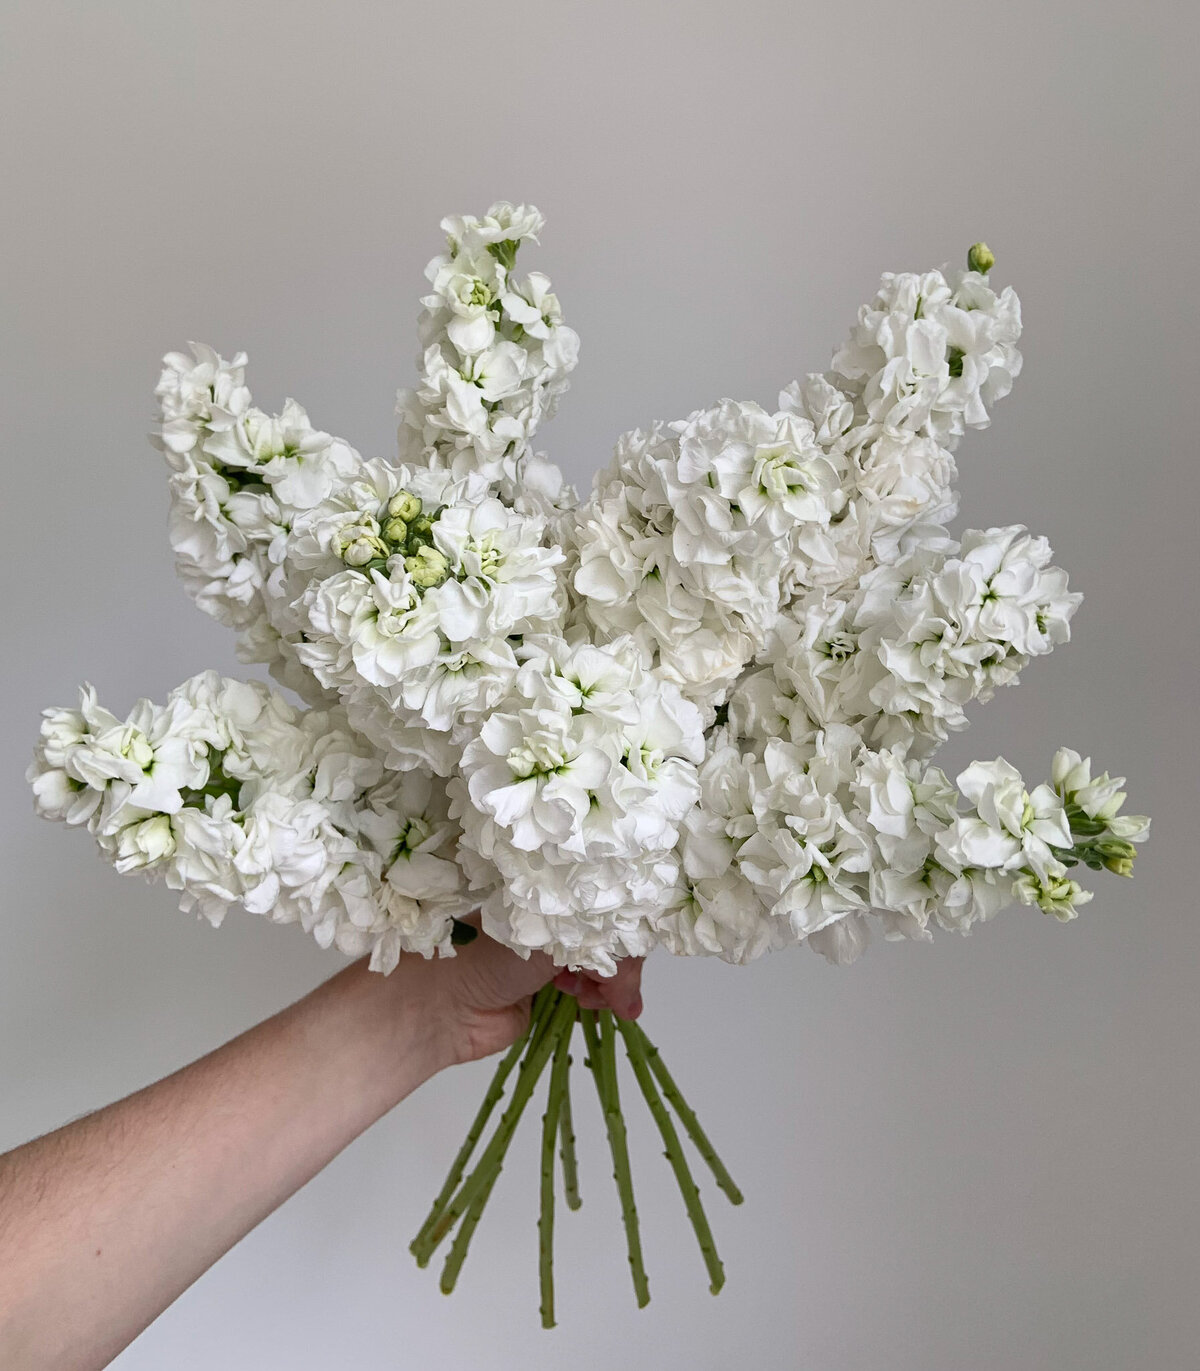 White fluffy stock flowers.